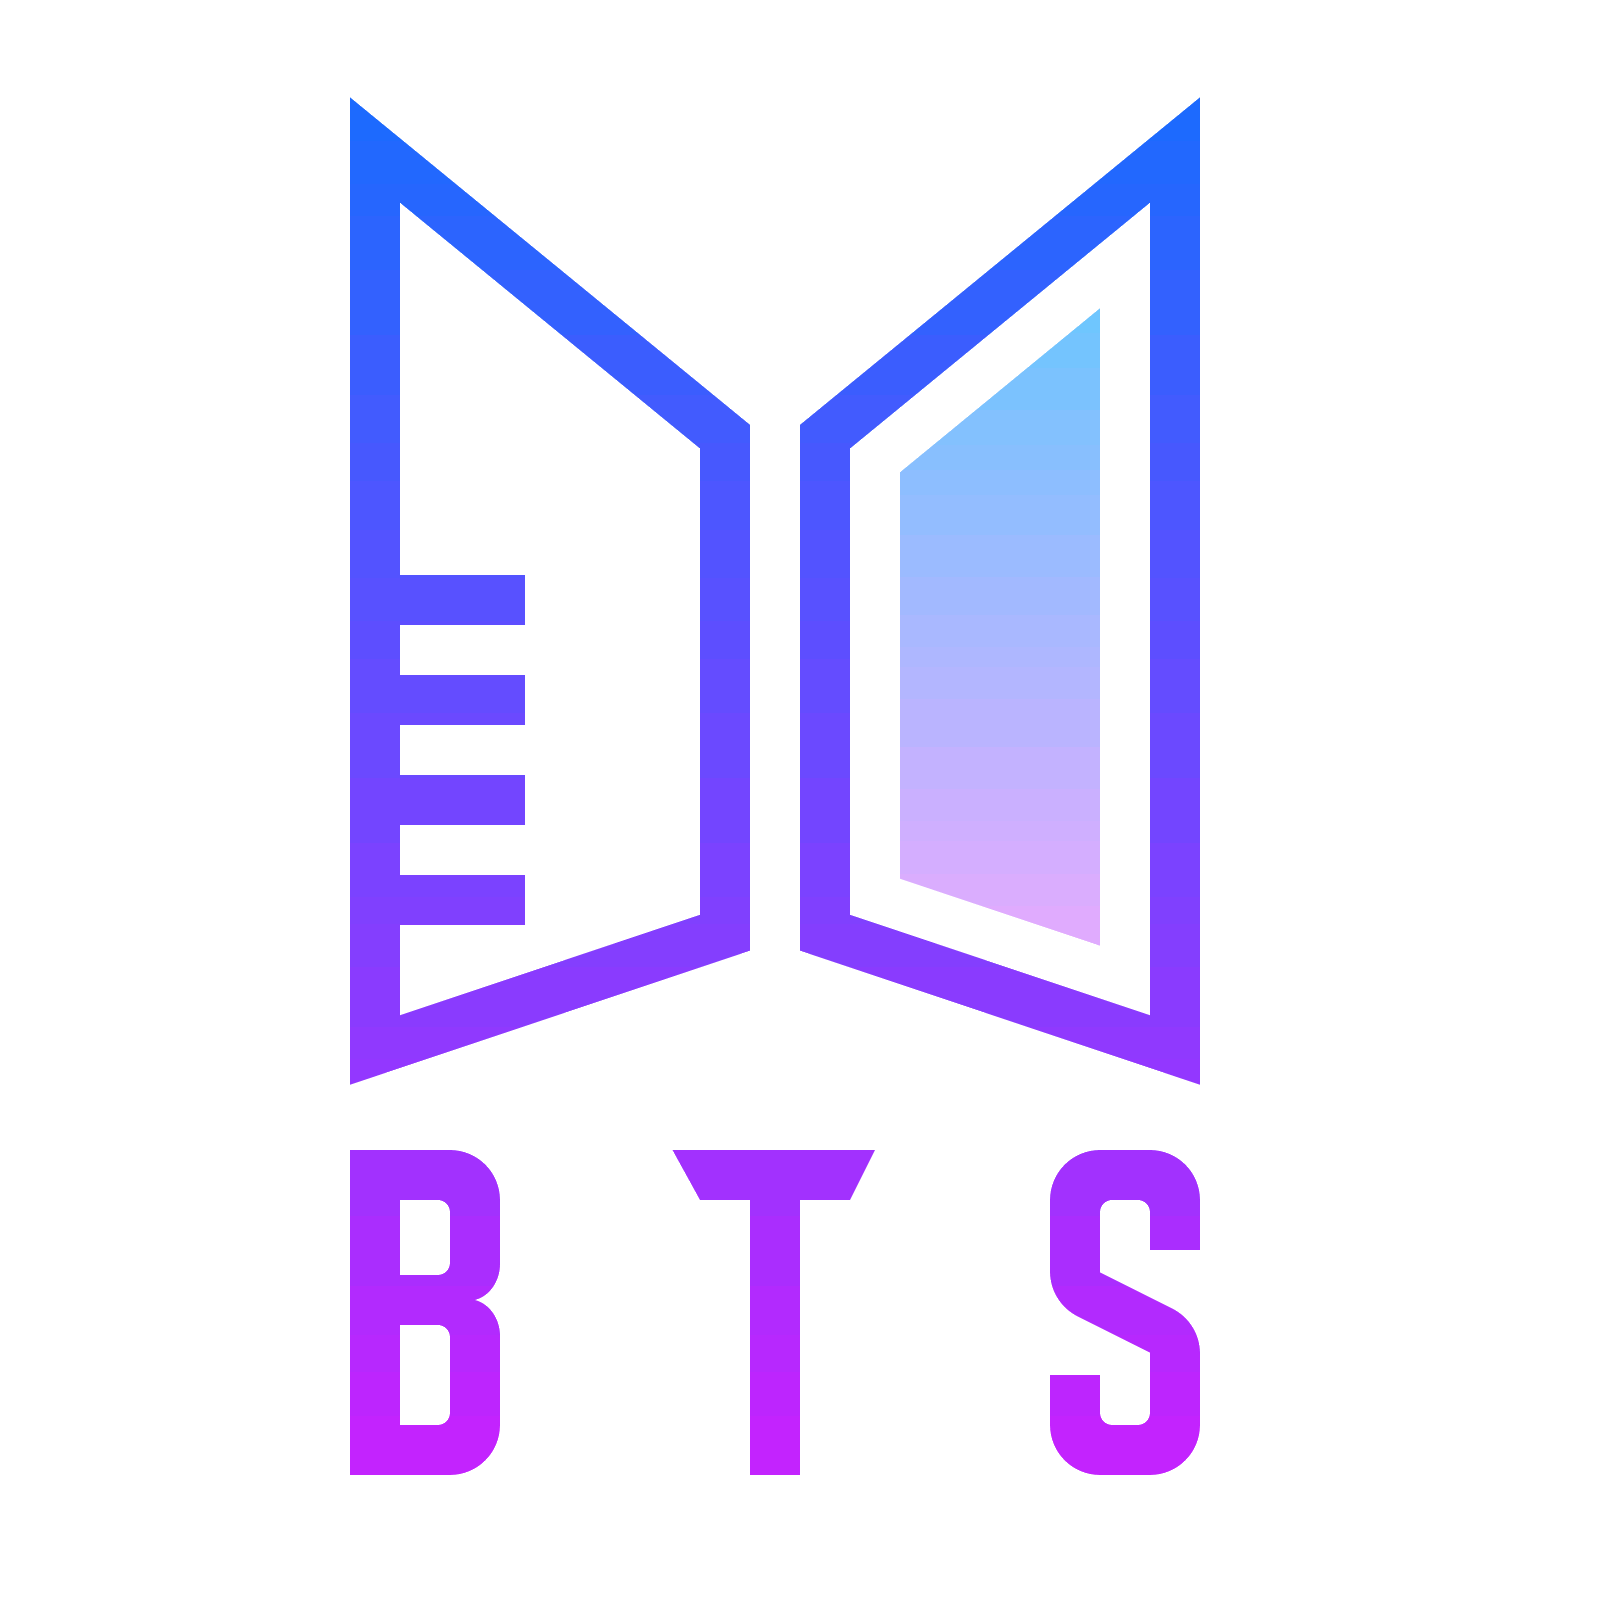 Bts Logo Png Image to u